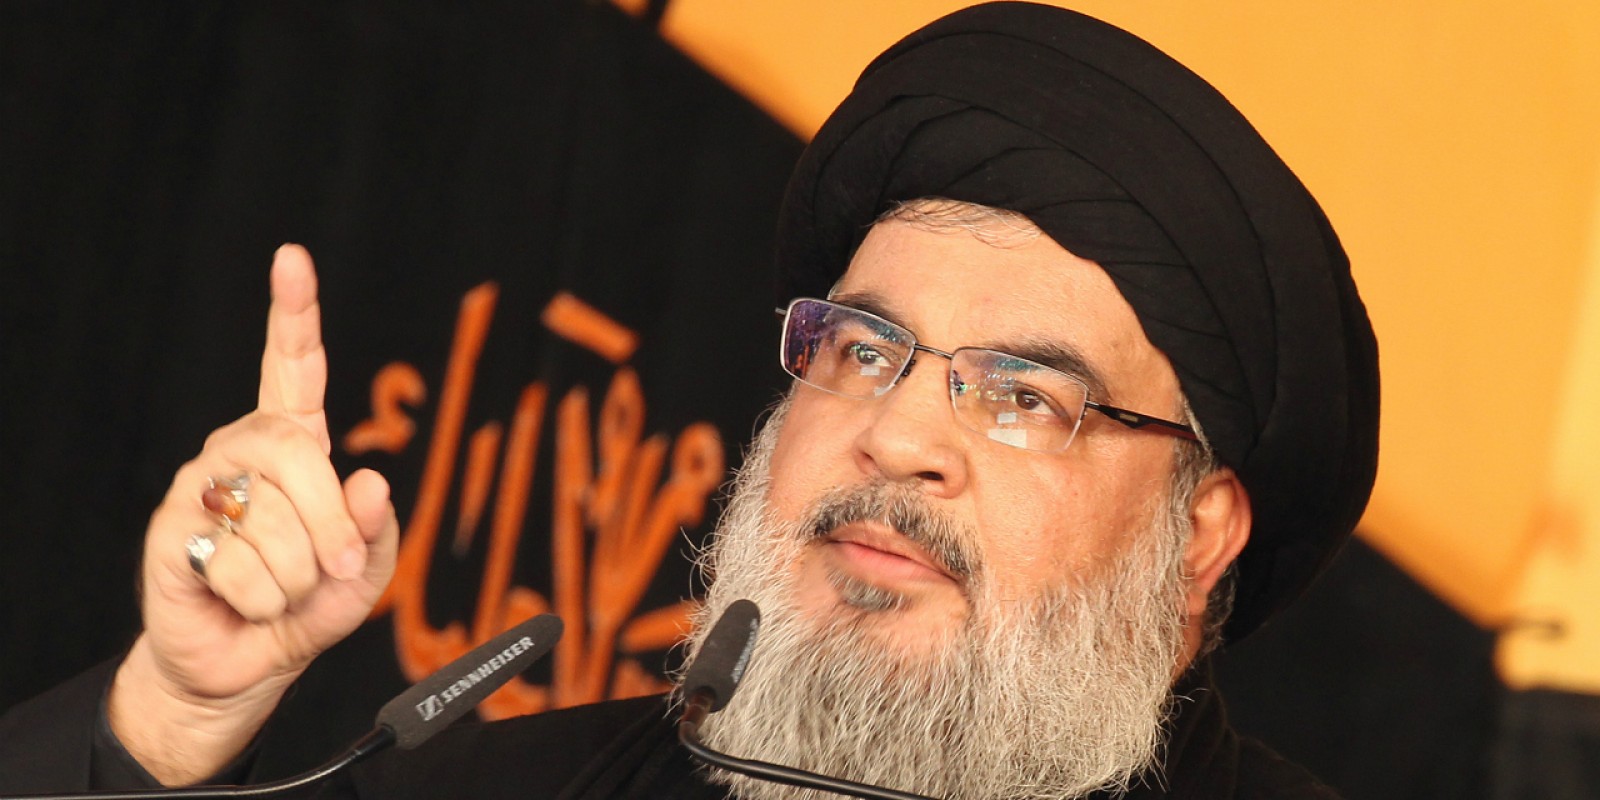 Déchaînement d'homophobie au Liban : les cris d'alarme du leader du Hezbollah